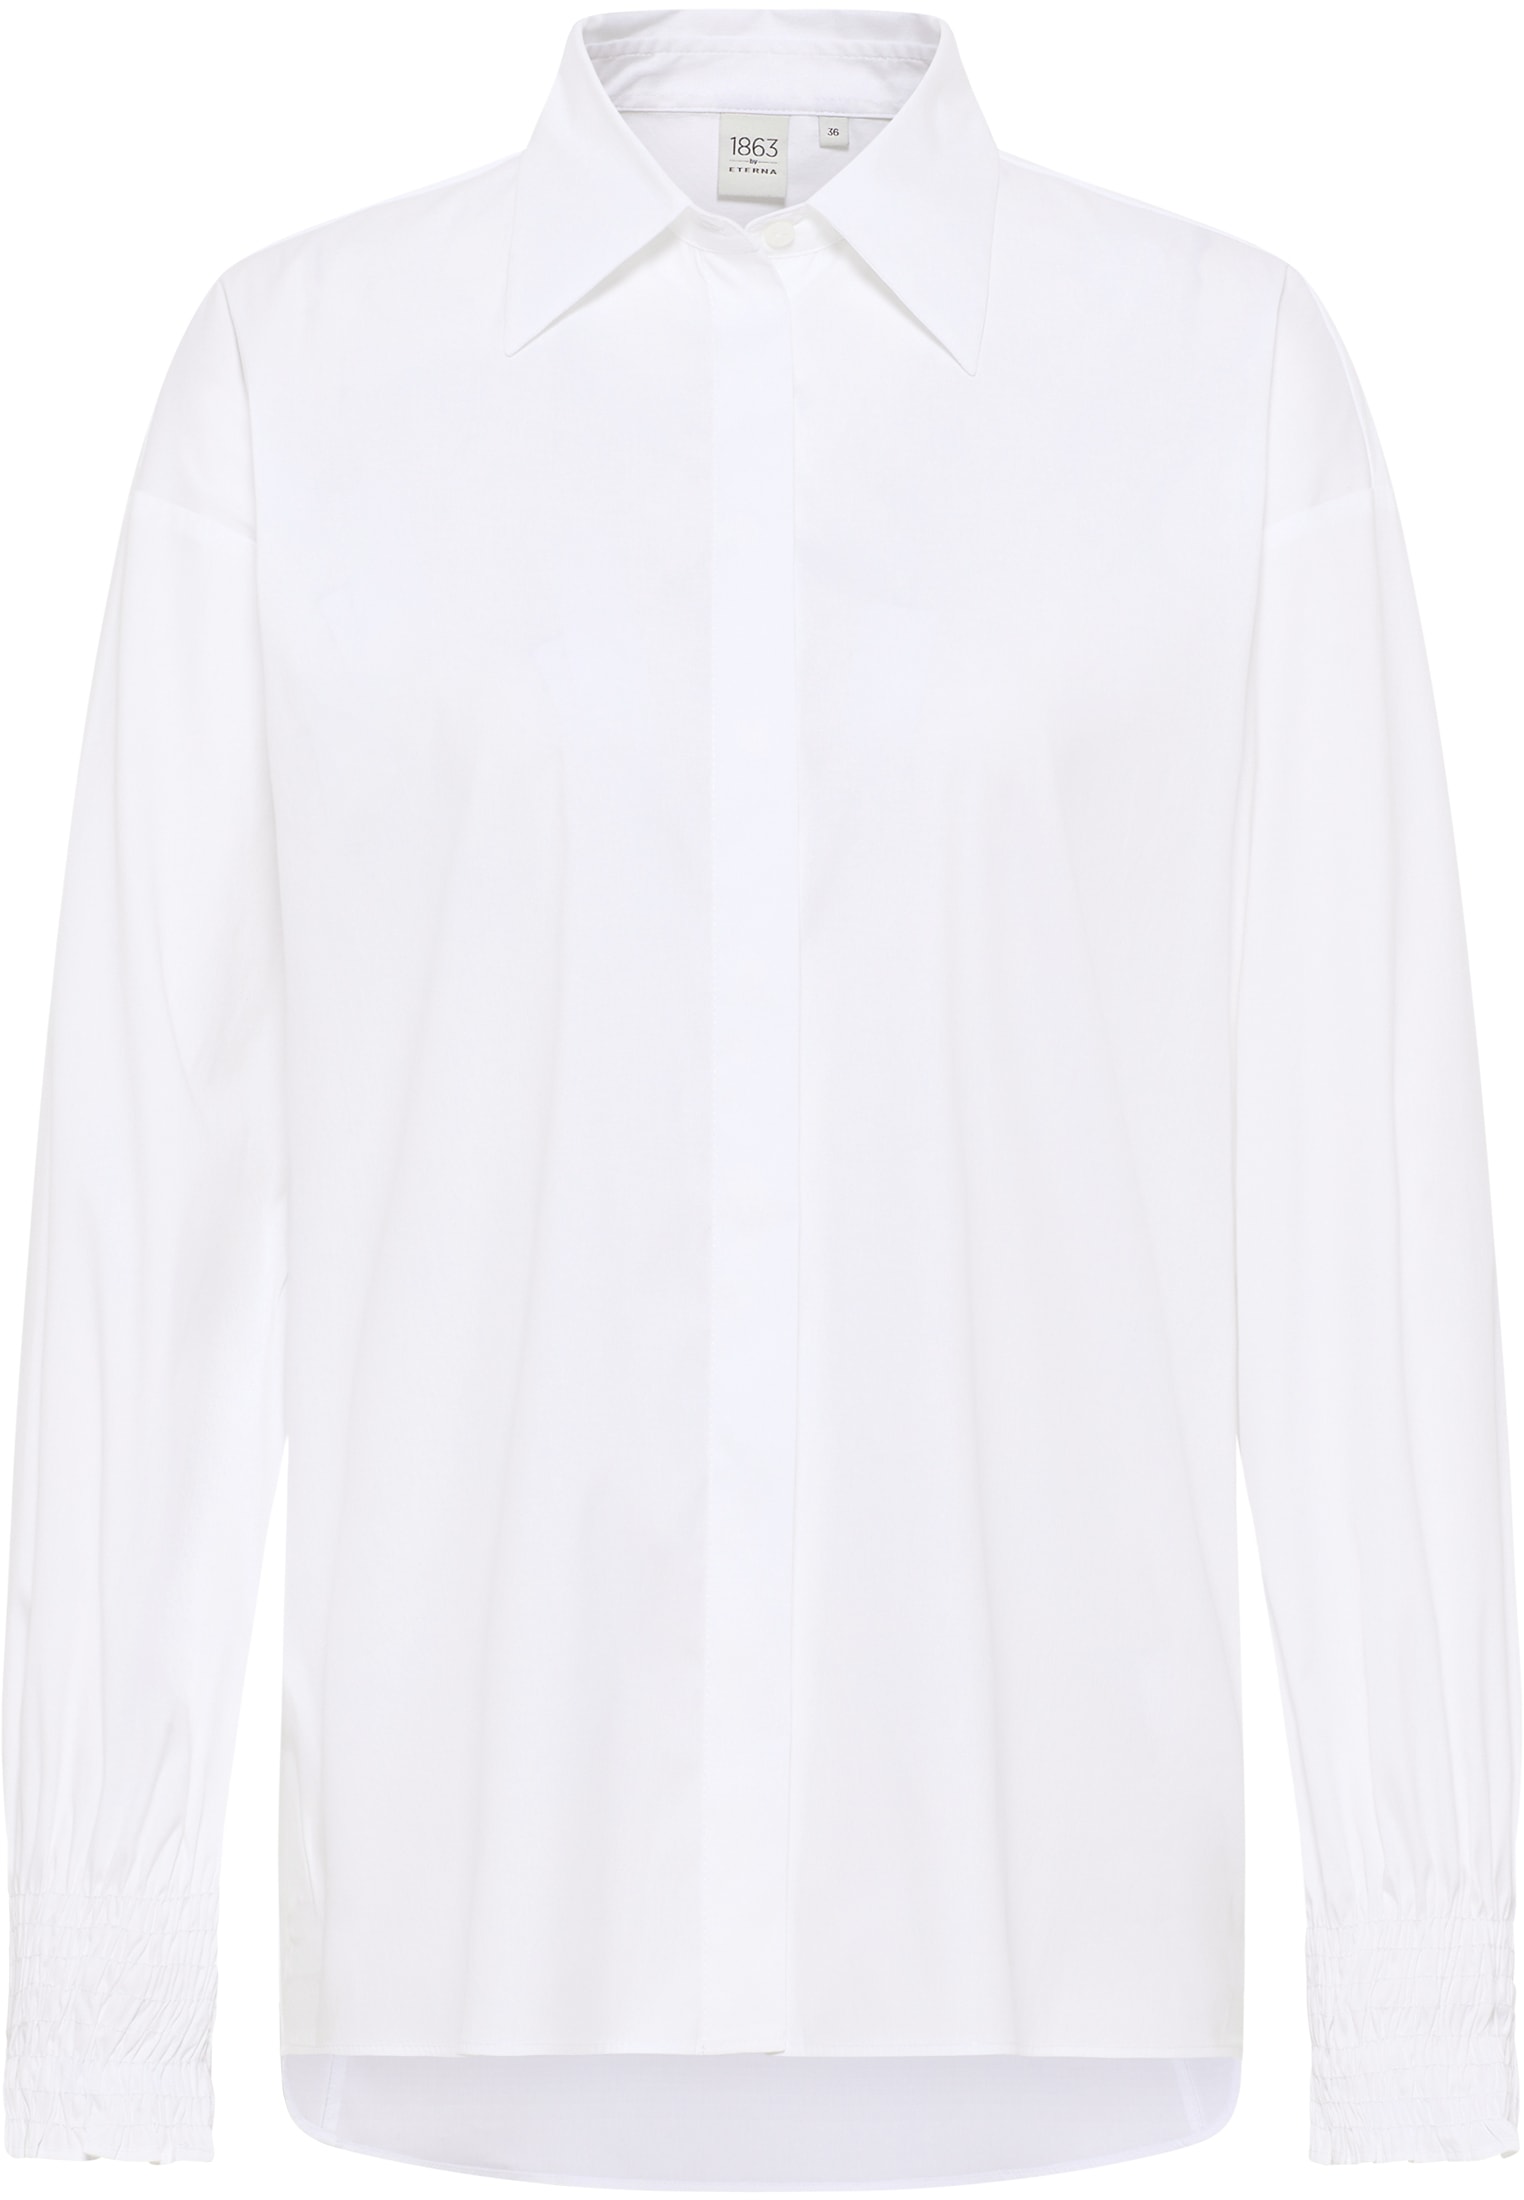 weiß | Shirt 46 | 2BL04347-00-01-46-1/1 Langarm Signature | Bluse in | weiß unifarben